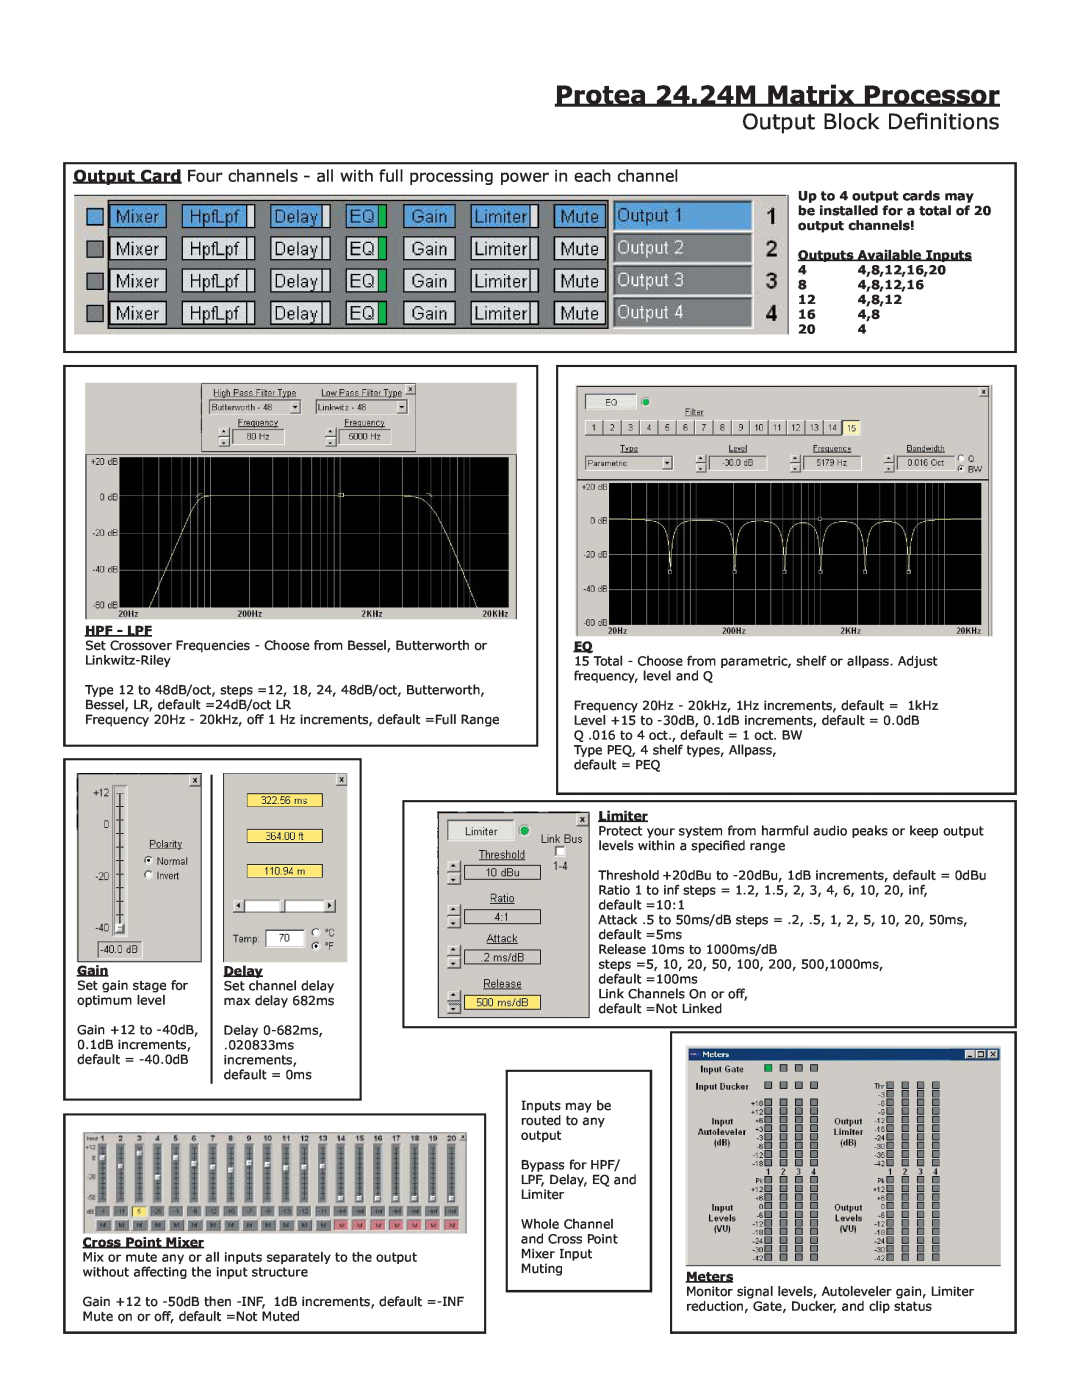 Ashly manual Output Block Deﬁnitions, Protea 24.24M Matrix Processor 